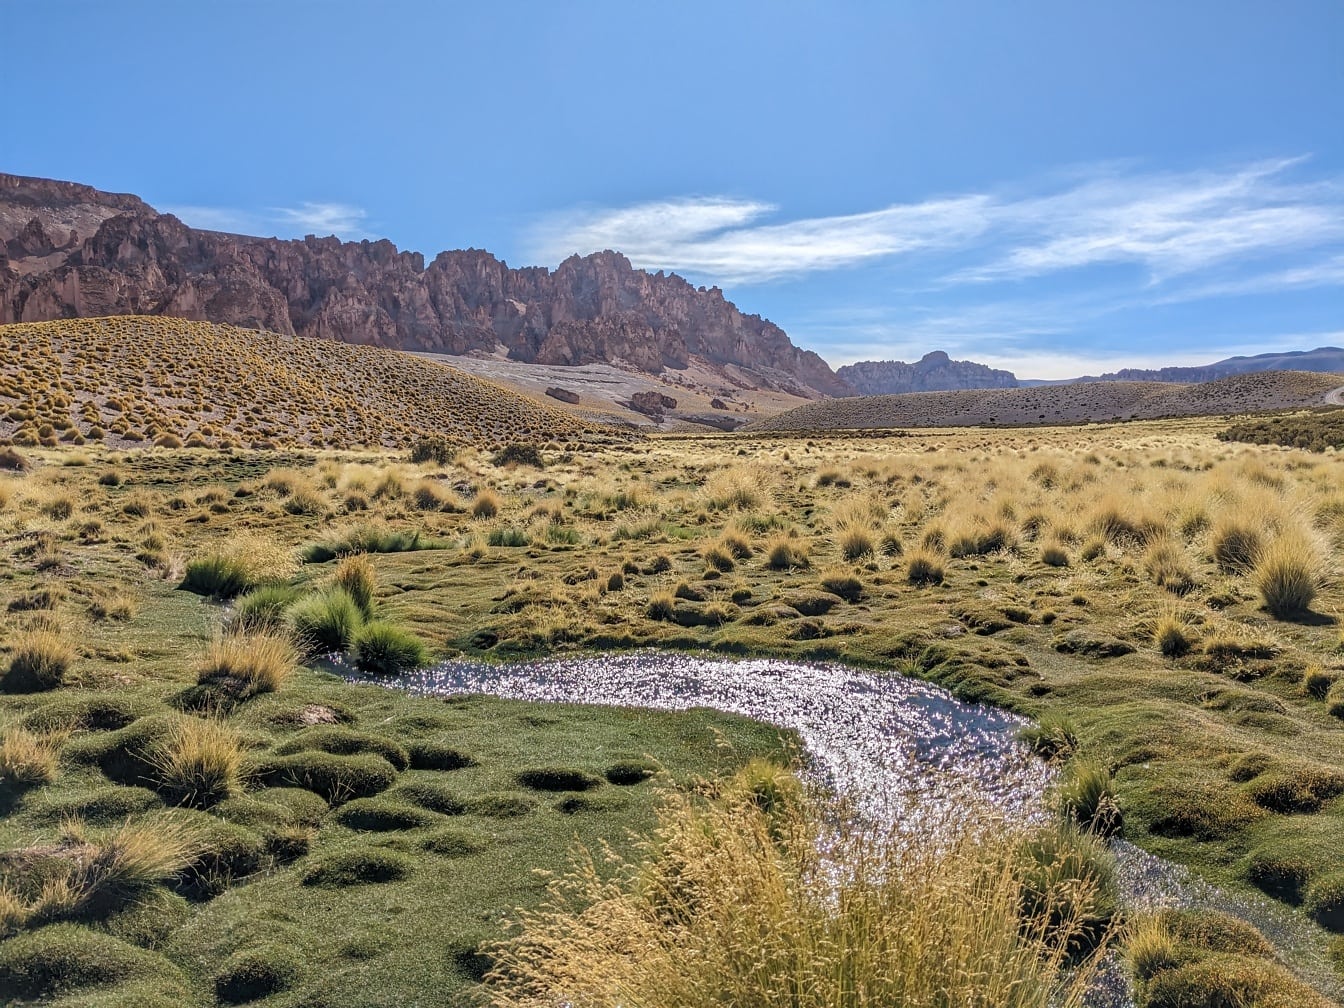 Dòng suối chảy qua một cánh đồng cỏ trên một cao nguyên khô cằn ở Puna de Atacama ở dãy núi Andes phía bắc Argentina